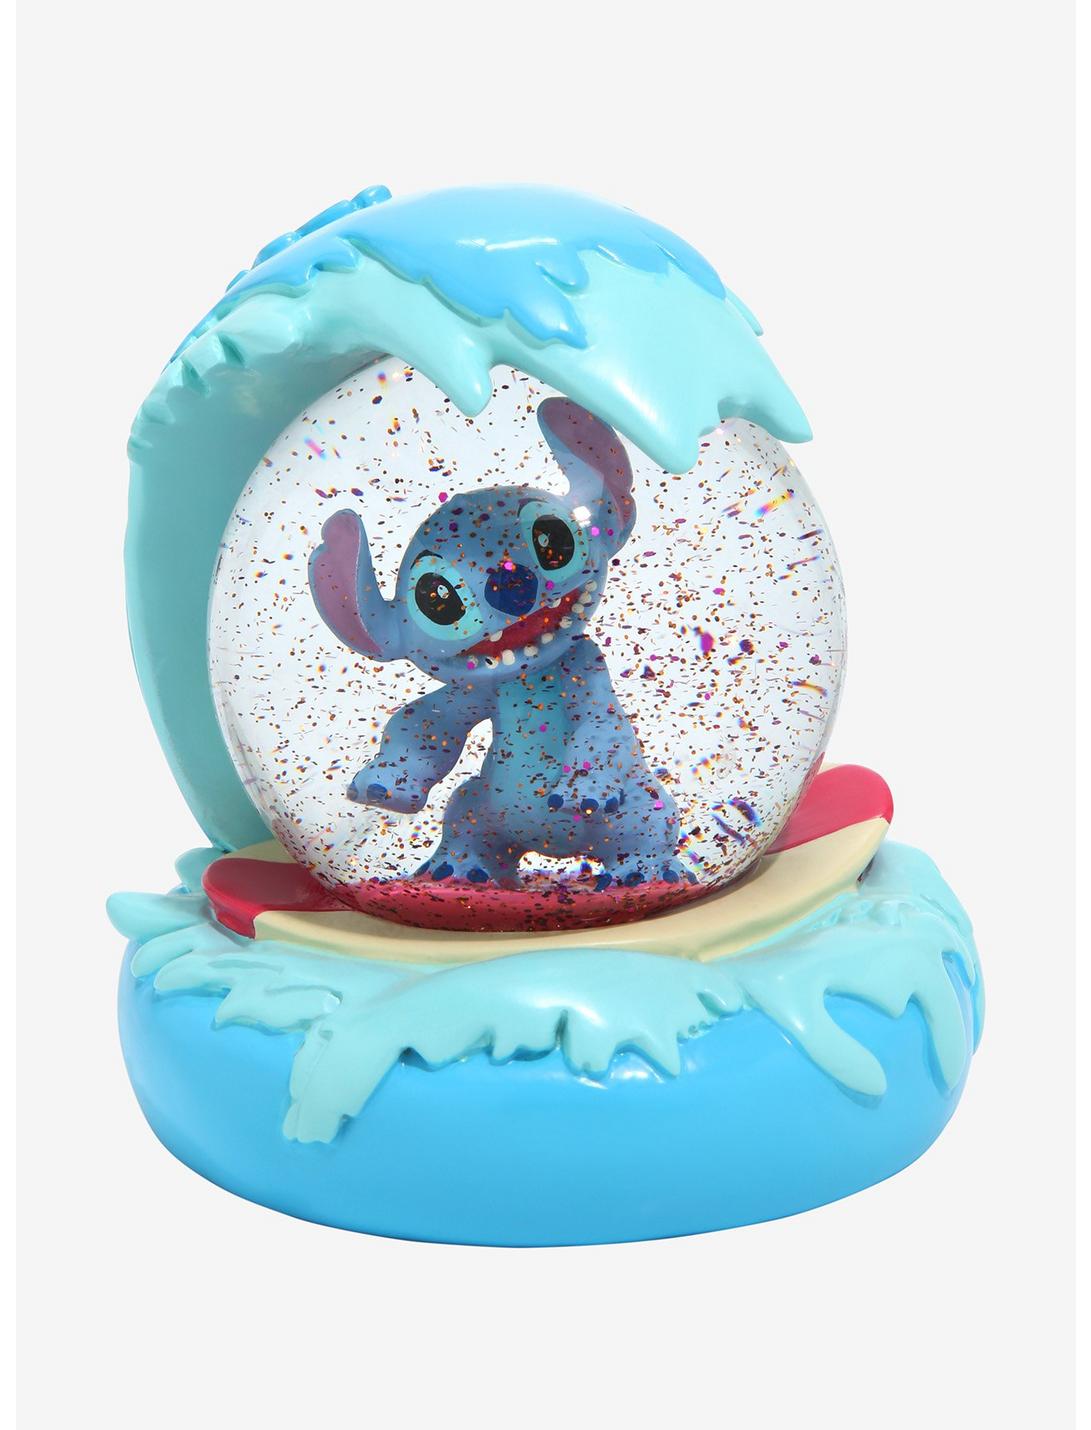 Disney Lilo & Stitch Surfin' Stitch Snow Globe